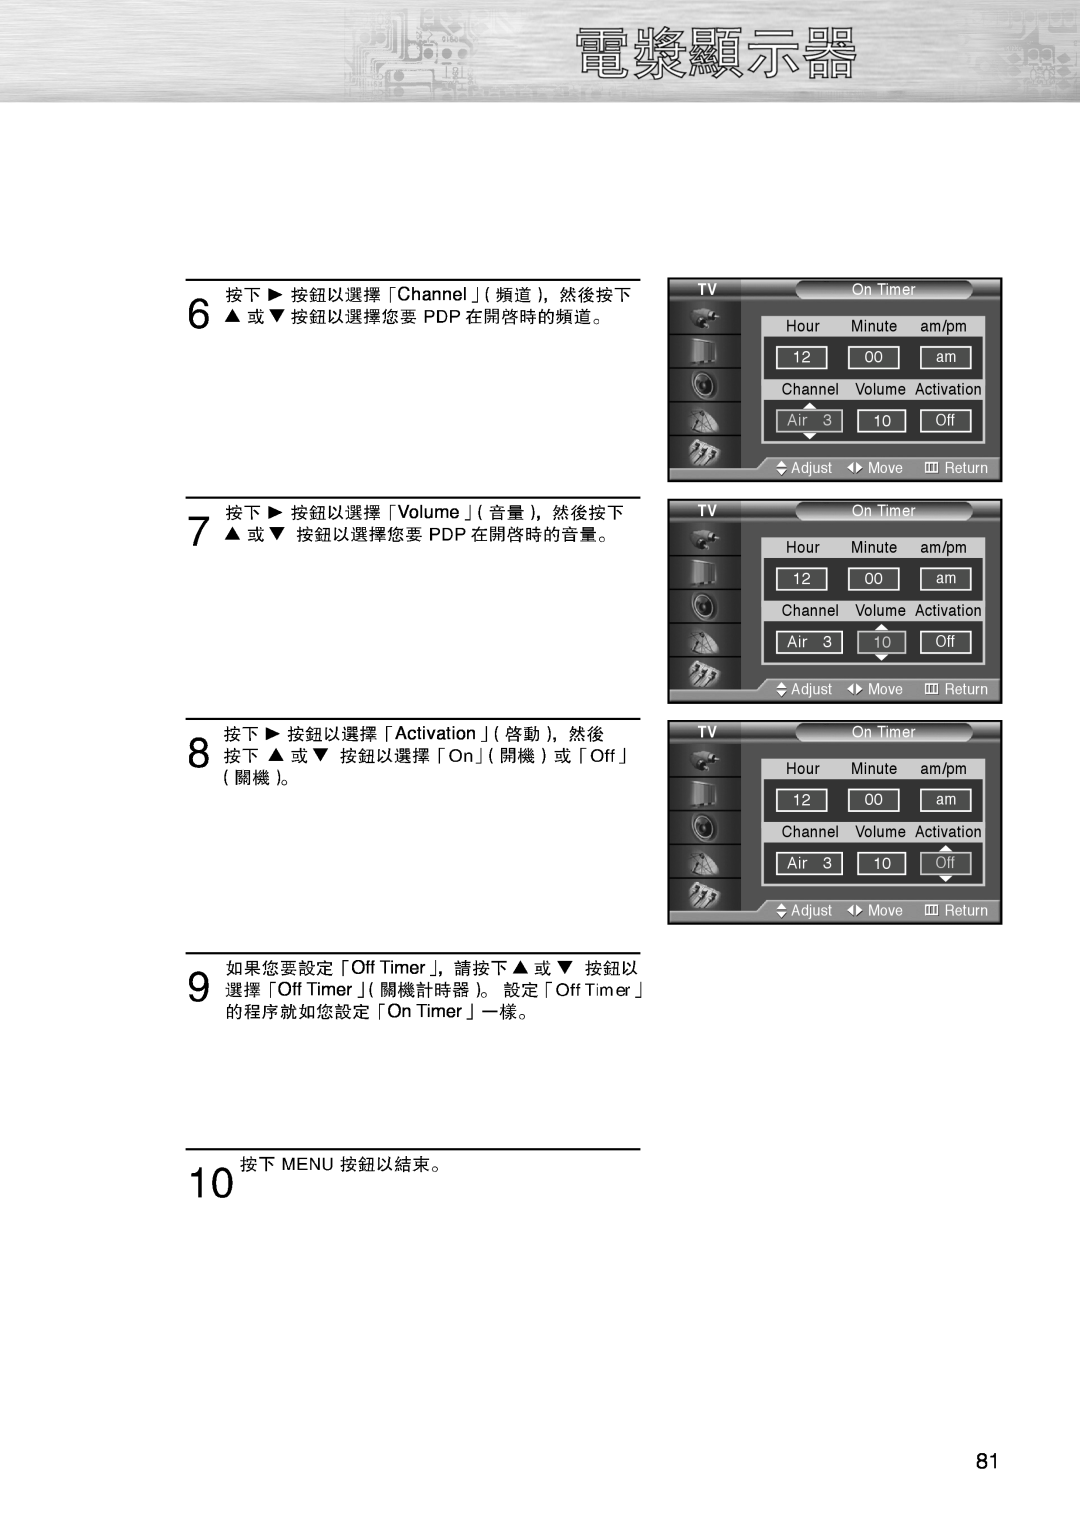 Samsung PL-42D4S manual Channel, Volume, Activation, Off Timer Off Timer On Timer 